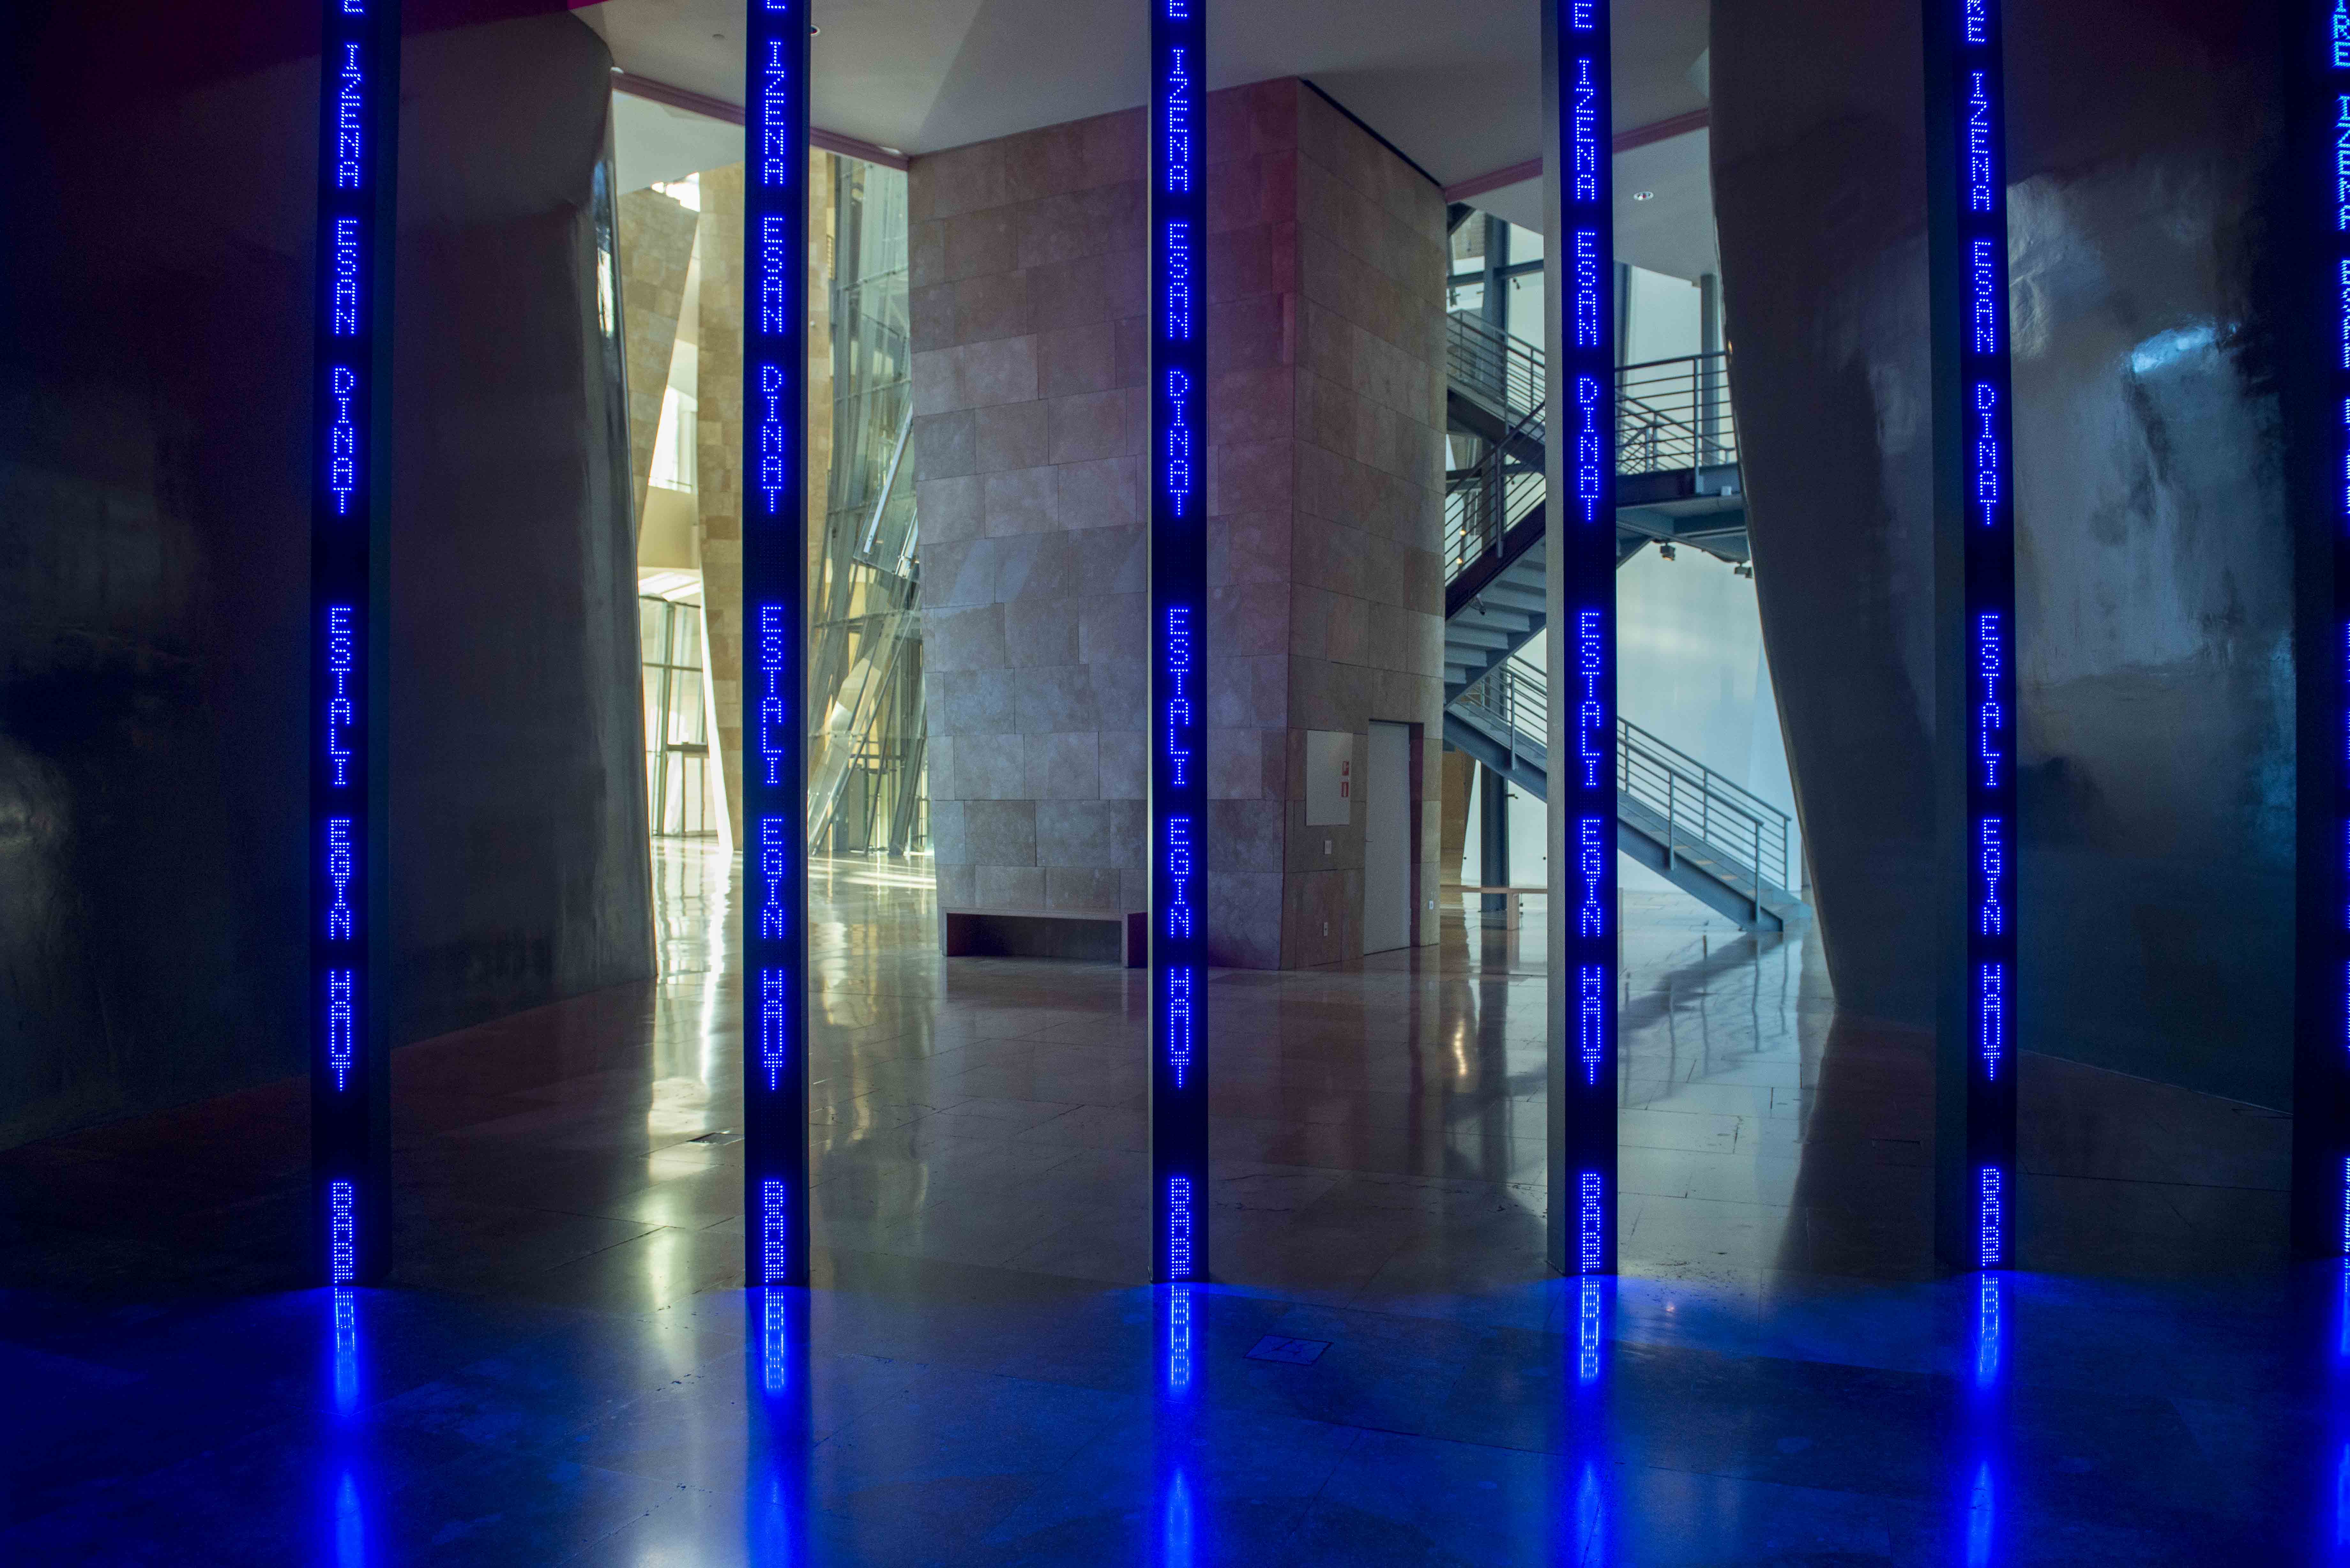 Bilboko instalazioa barrutik | Jenny Holzer | Guggenheim Bilbao Museoa